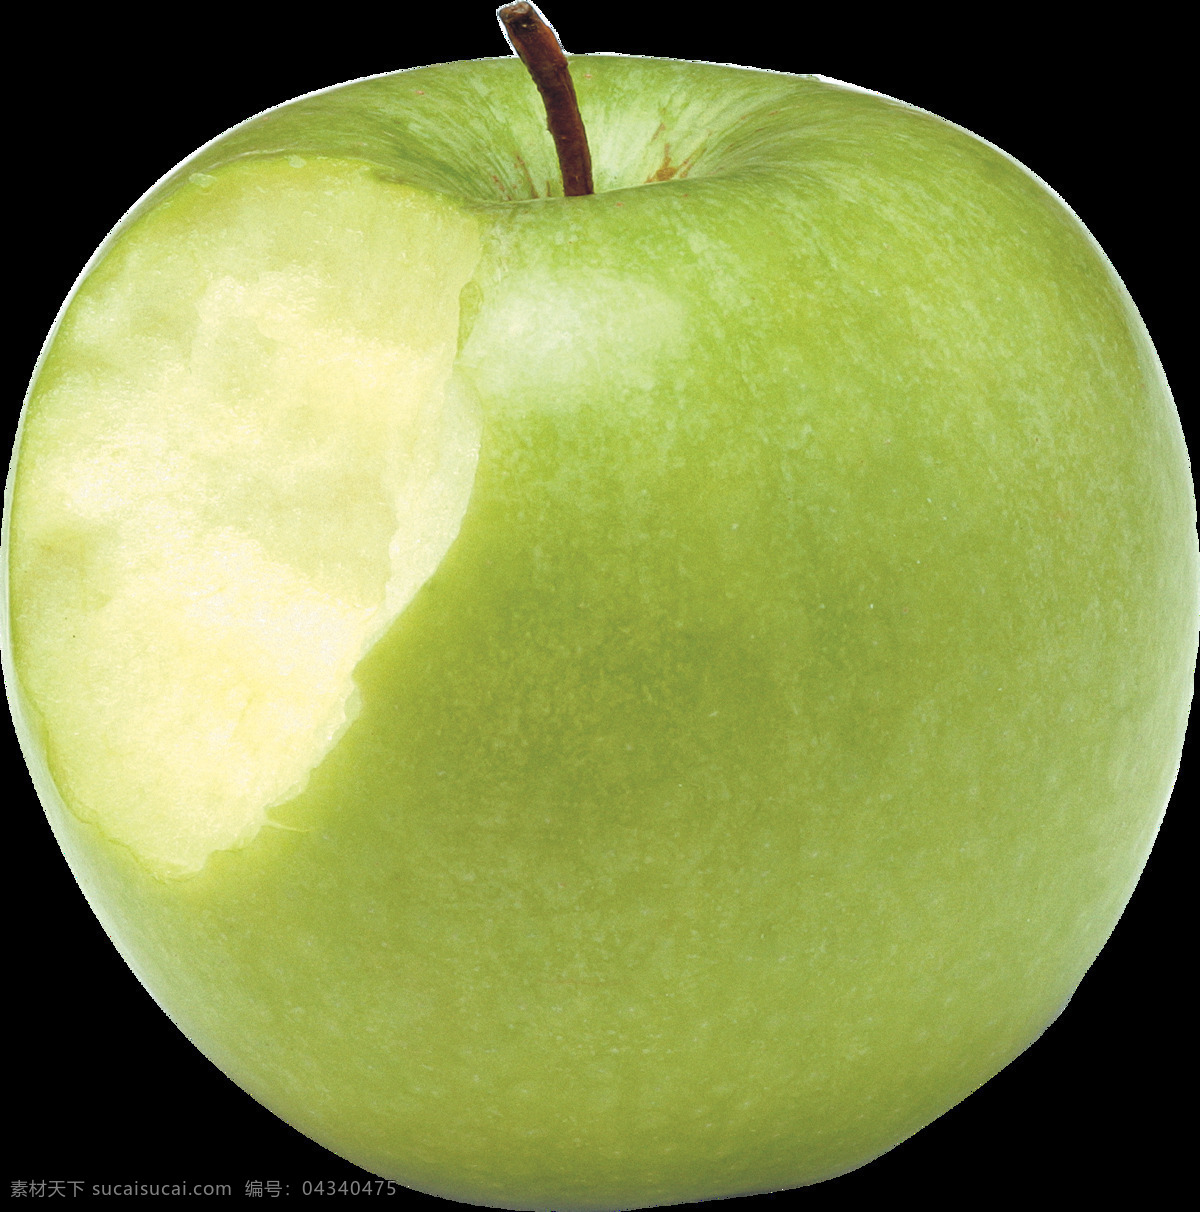 咬 一口 绿 苹果 免 抠 透明 图 层 苹果图片 苹果照片 青苹果 logo 苹果简笔画 壁纸高清 大苹果 红苹果 苹果梨树 苹果商标 金毛苹果 青苹果榨汁